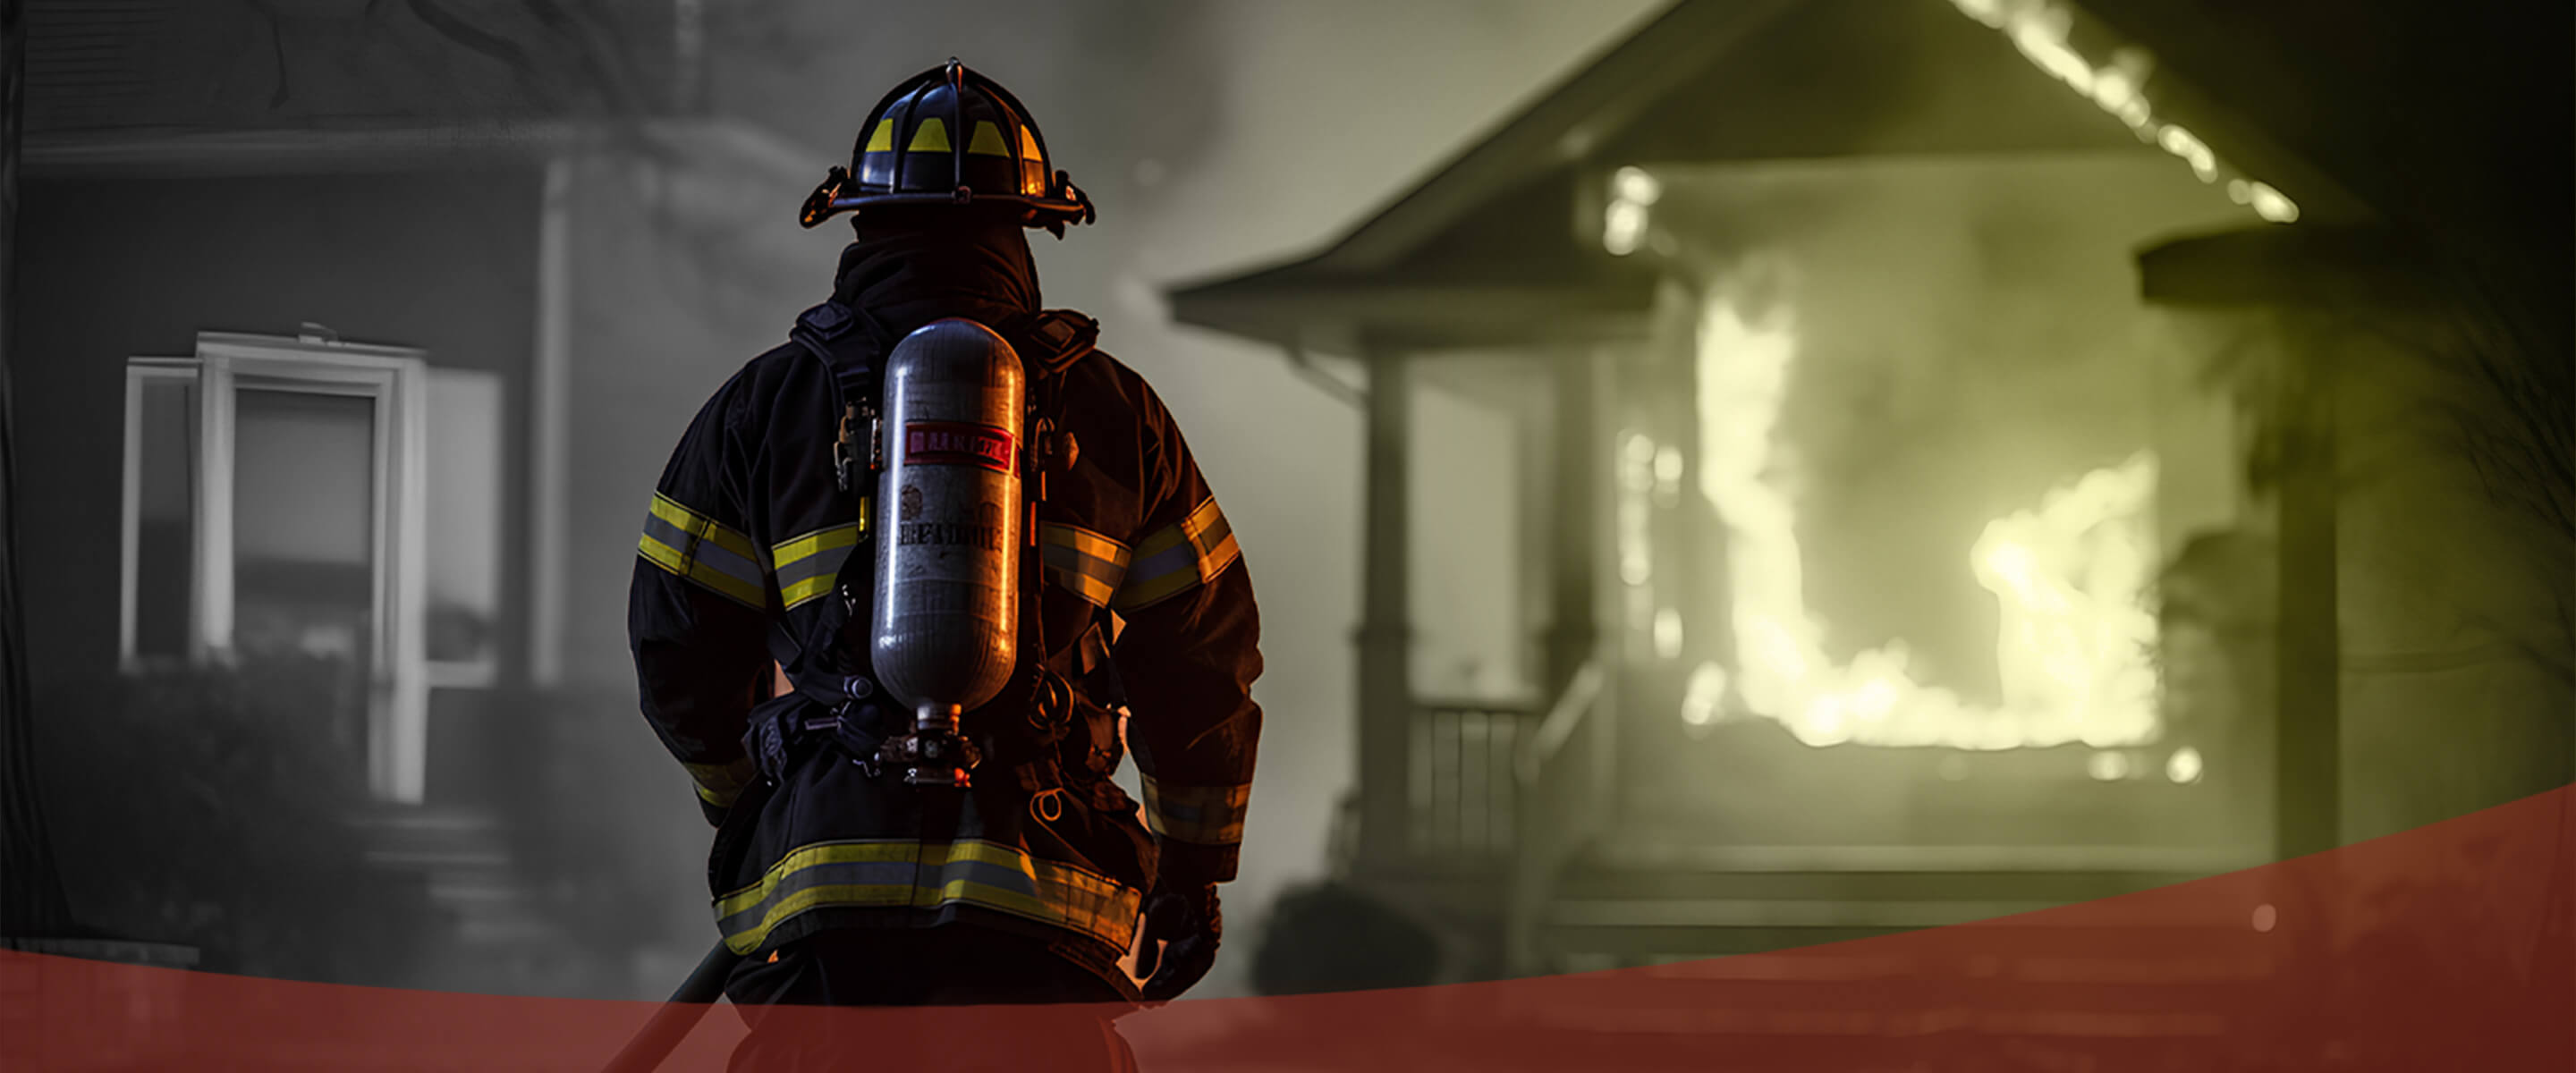 Firefighter Promise hero image